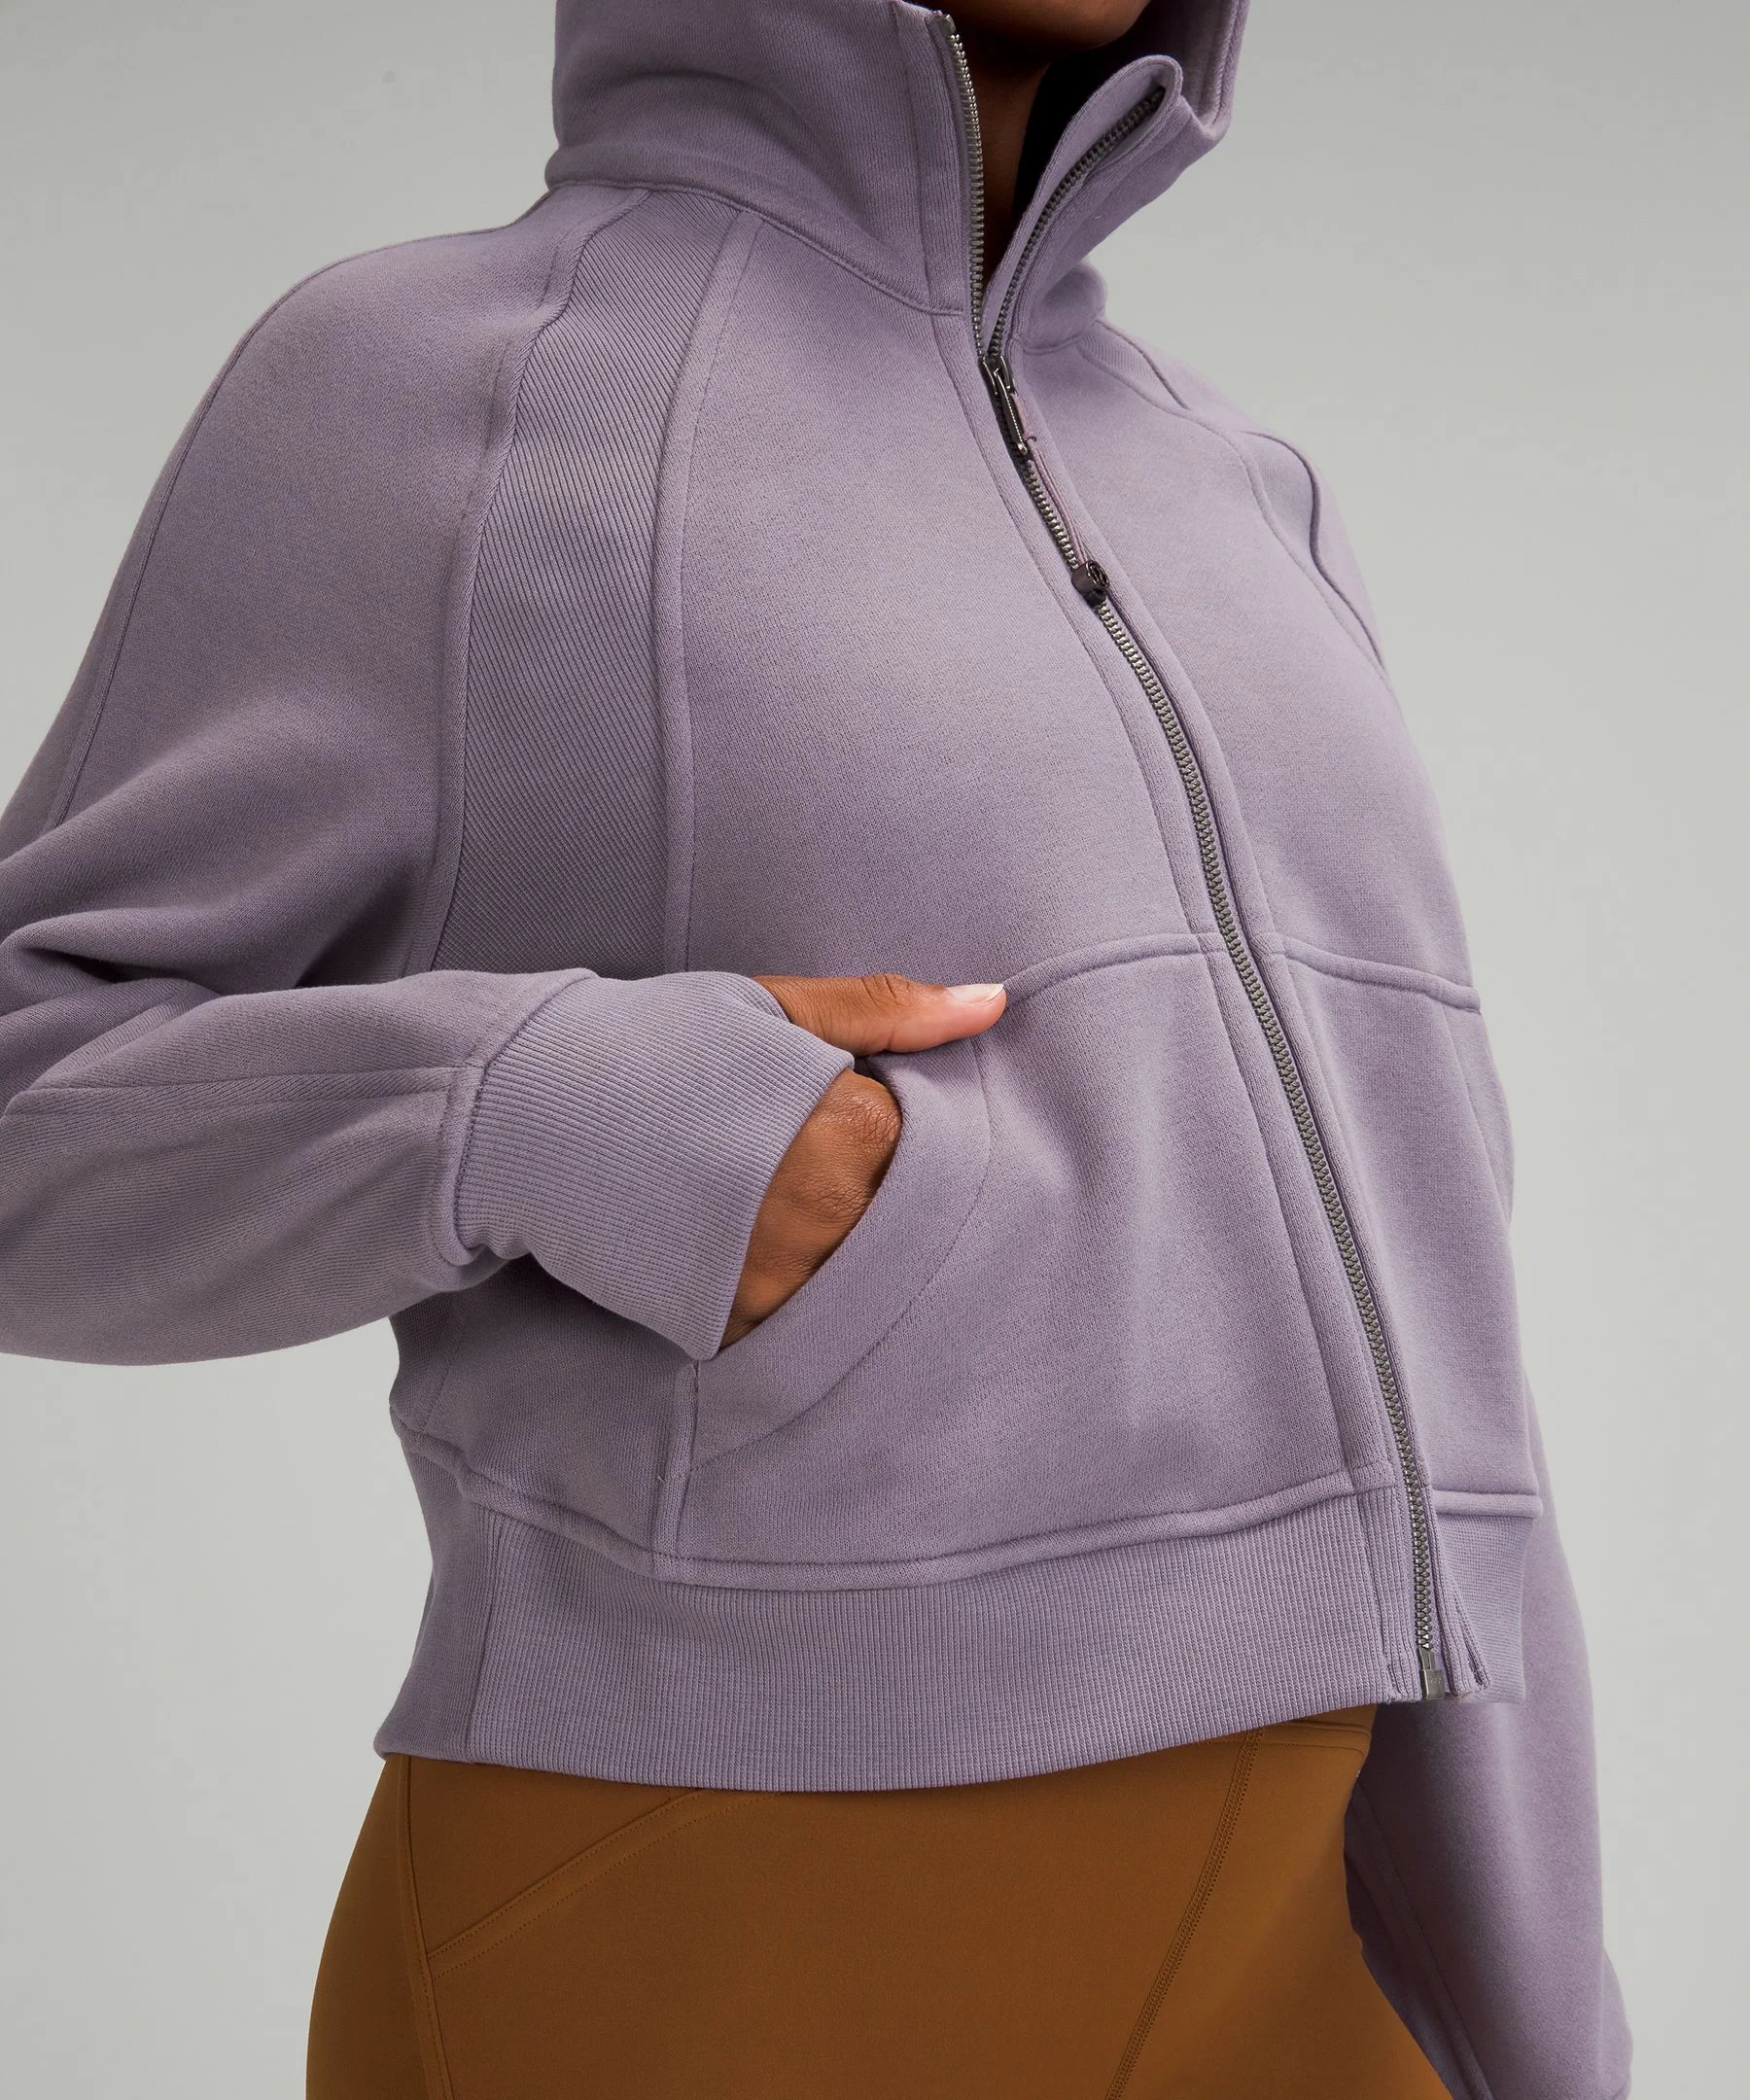 Lululemon Scuba Oversized Full-Zip Hoodie In Cassis Purple Size XS - $130 -  From Lizanne